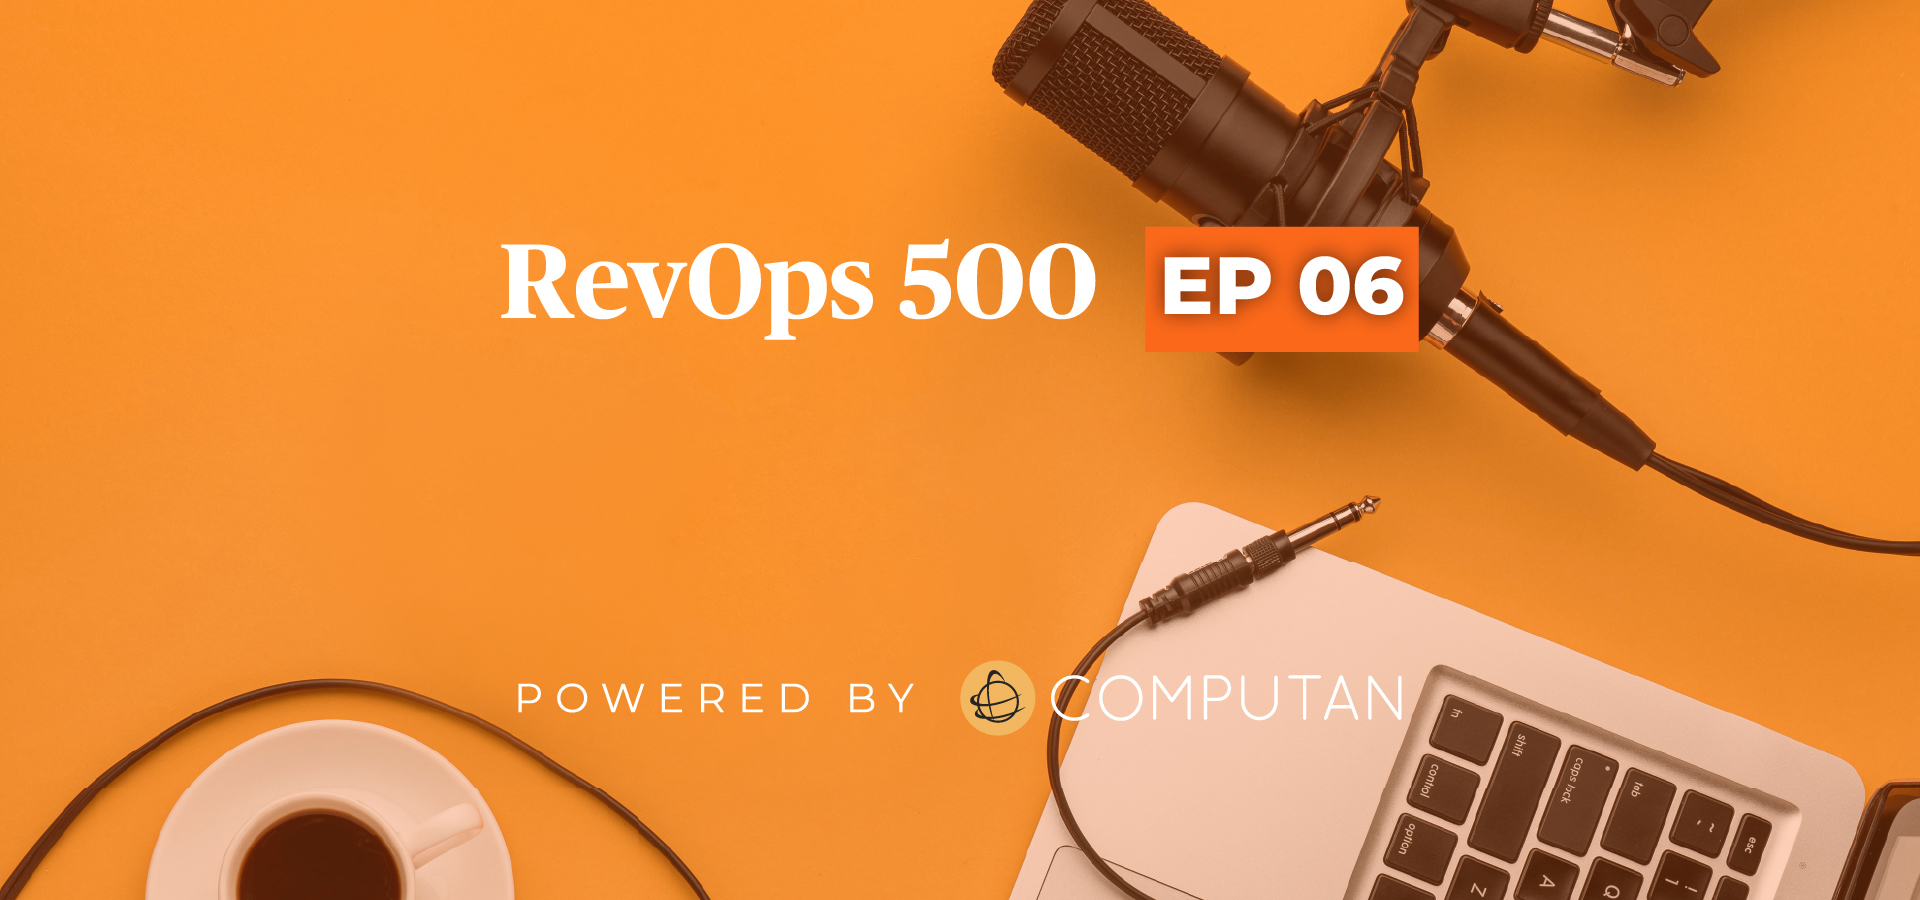 RevOps Episode 06